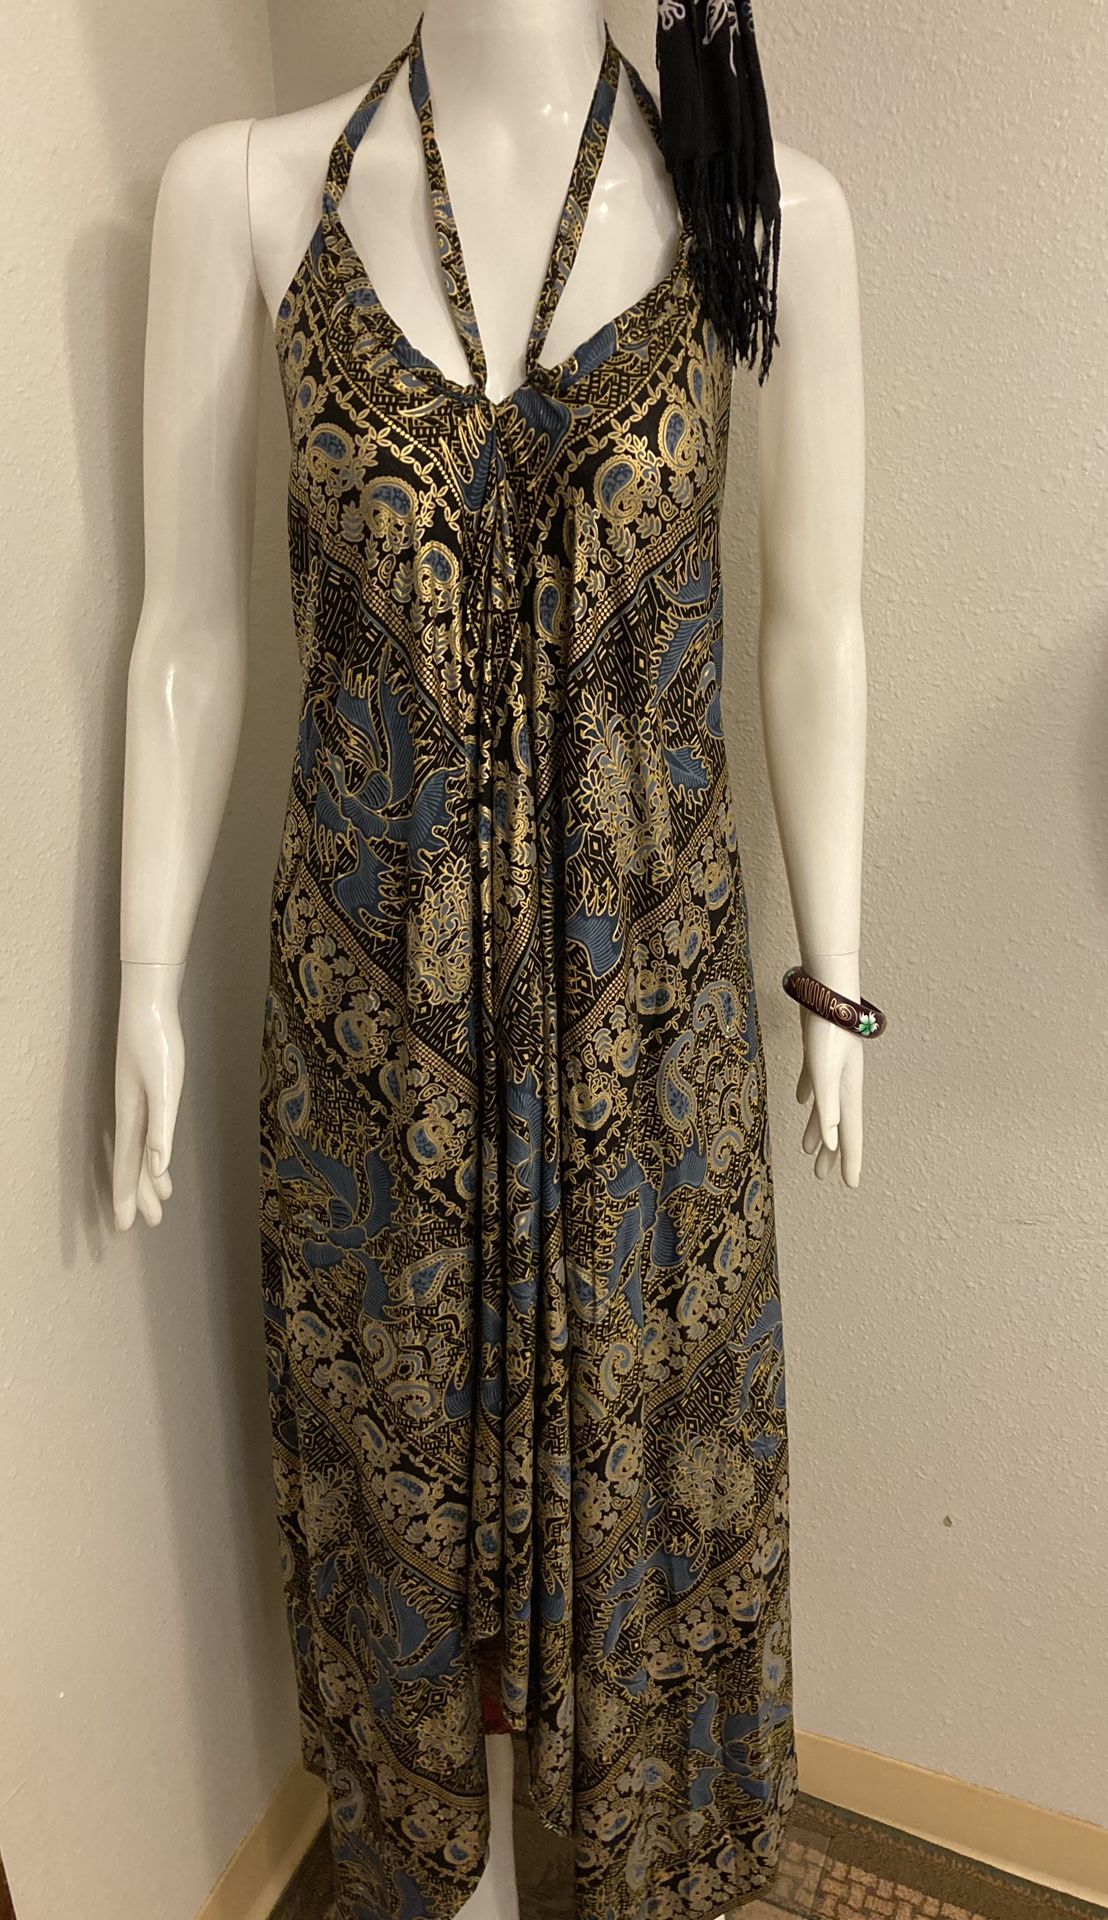 S/M dark blue & gold halter dress